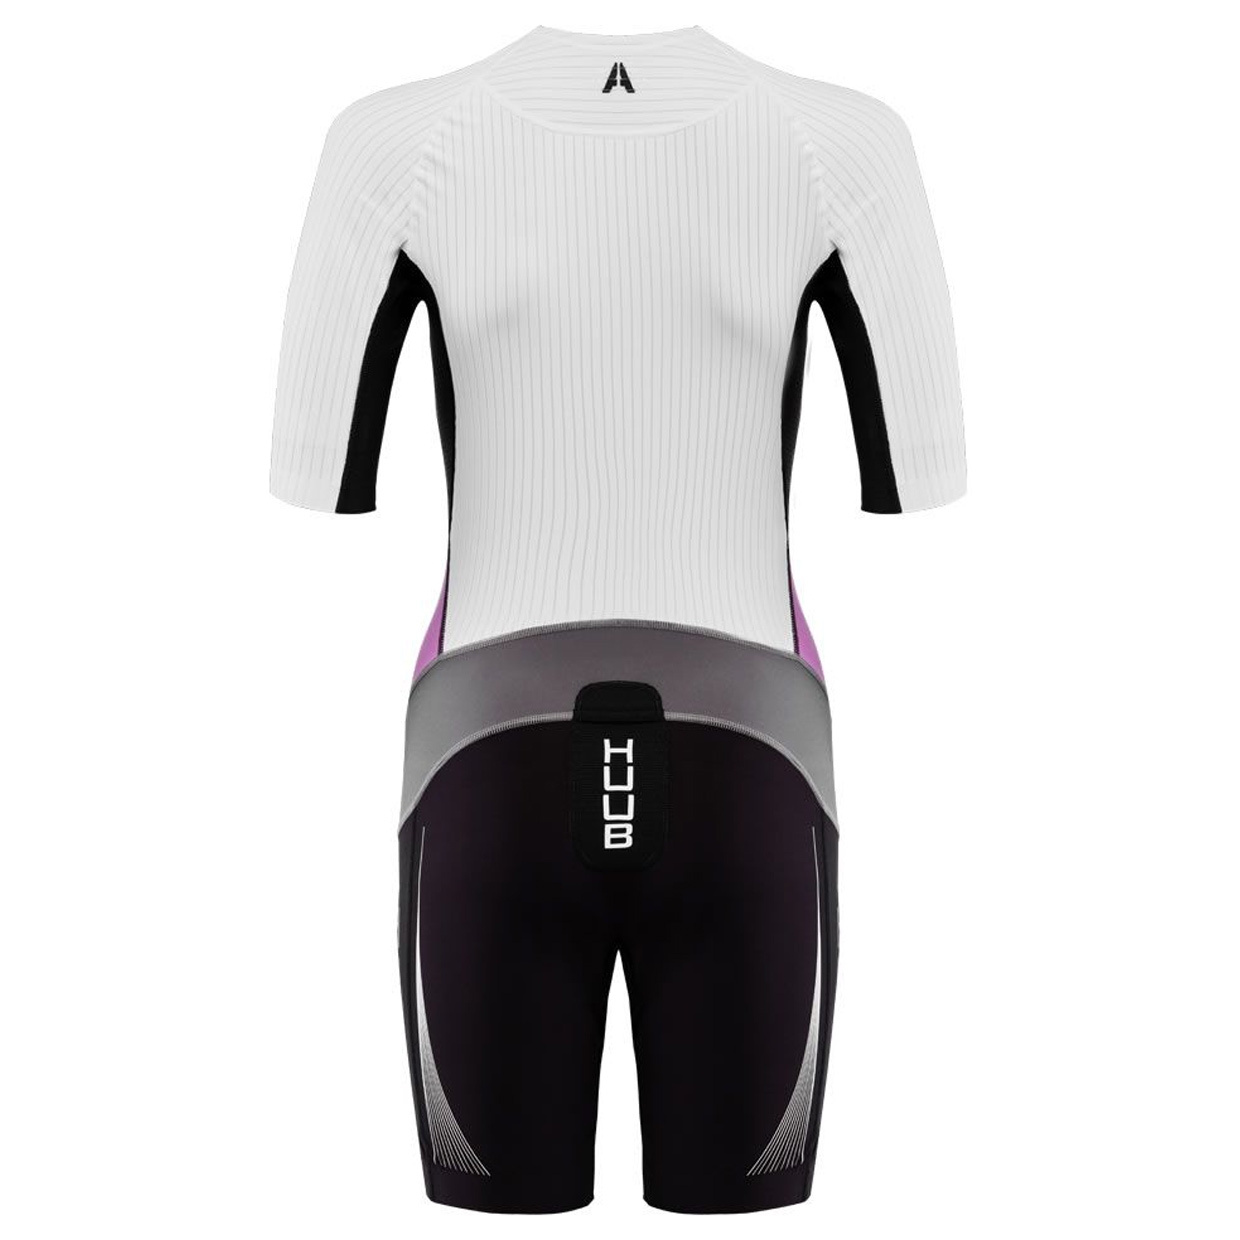 Damen Triathlonanzug Anemoi Aero Tri Suit Einteiler